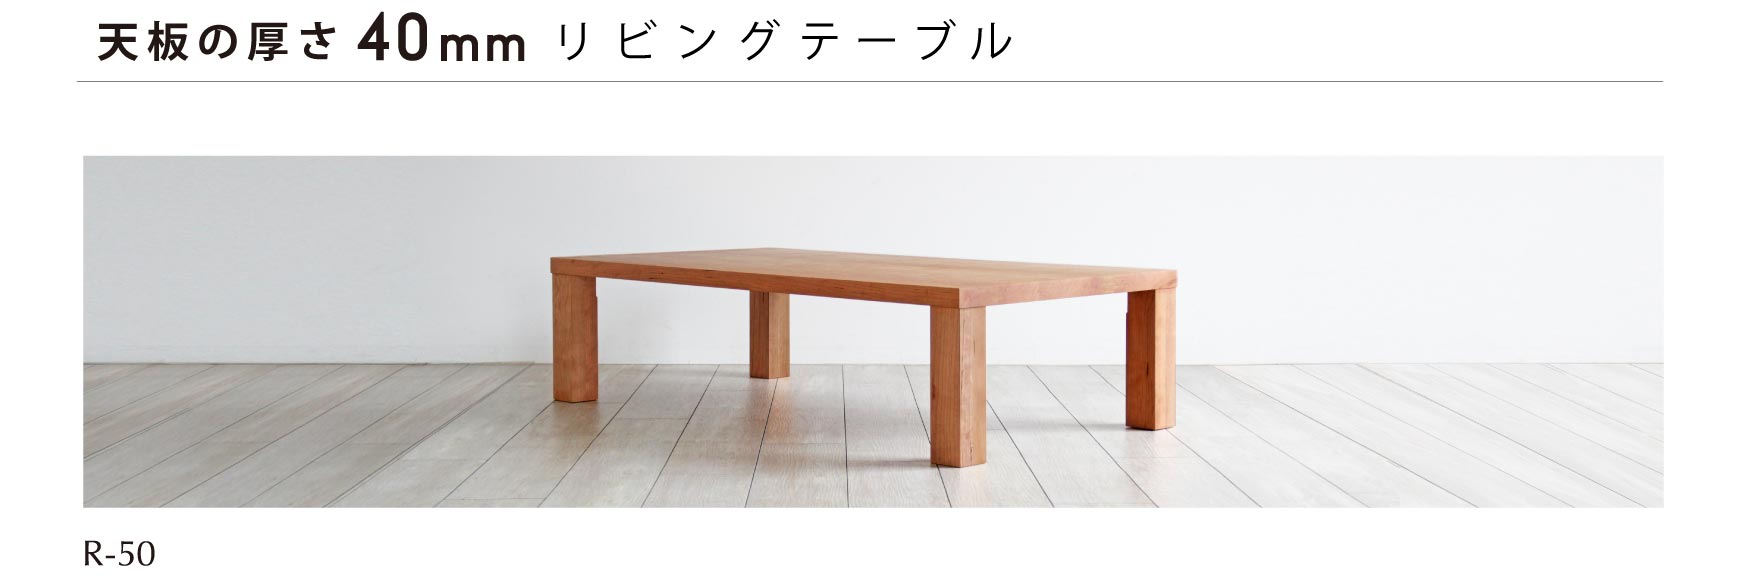 日本の職人が丁寧につくり上げる上質なリビングテーブル